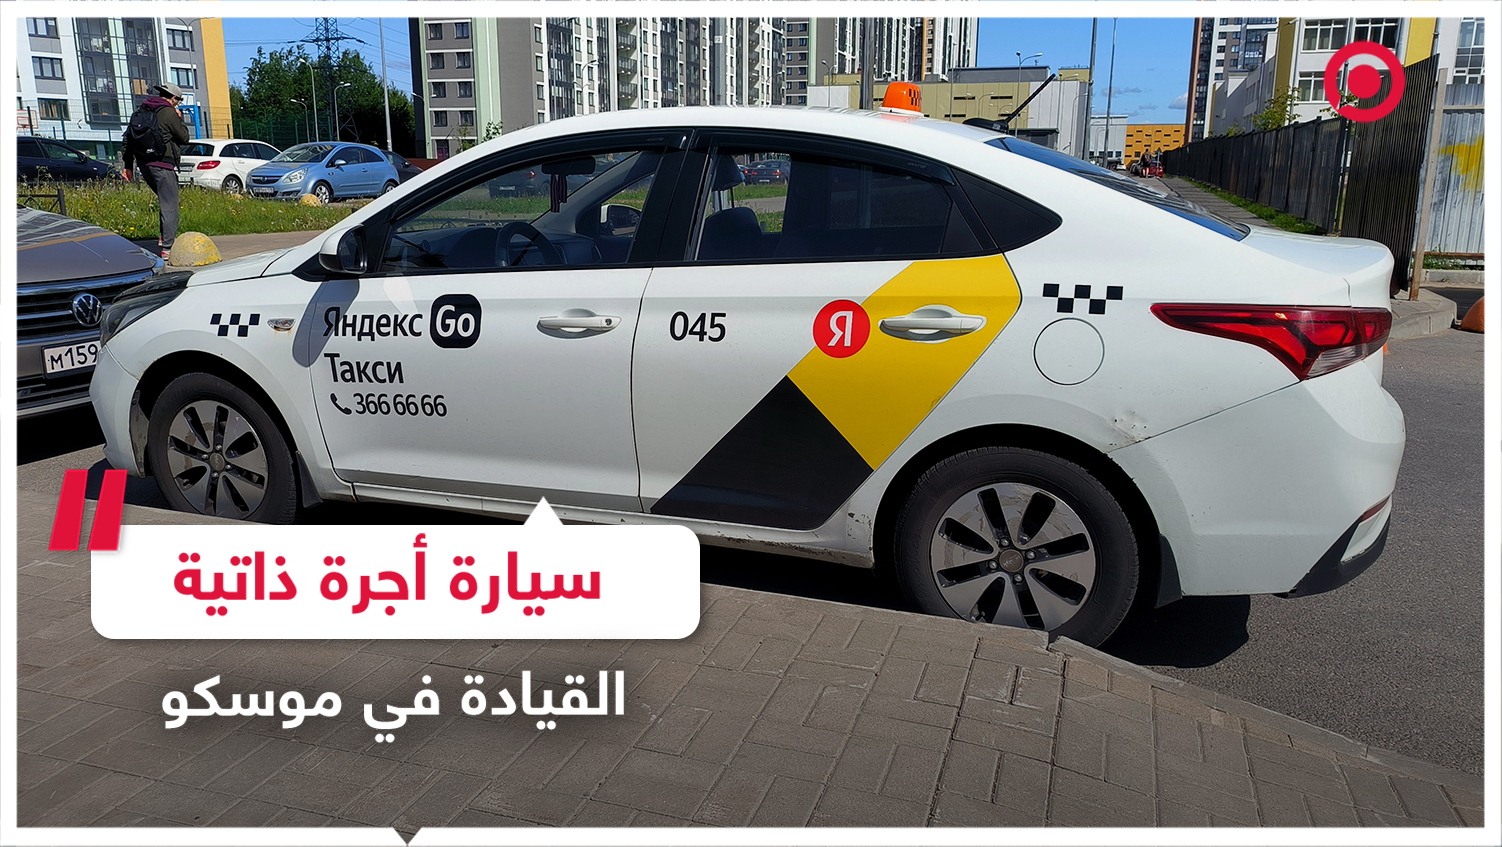 شركة "ياندكس" تختبر سيارة أجرة ذاتية القيادة في موسكو